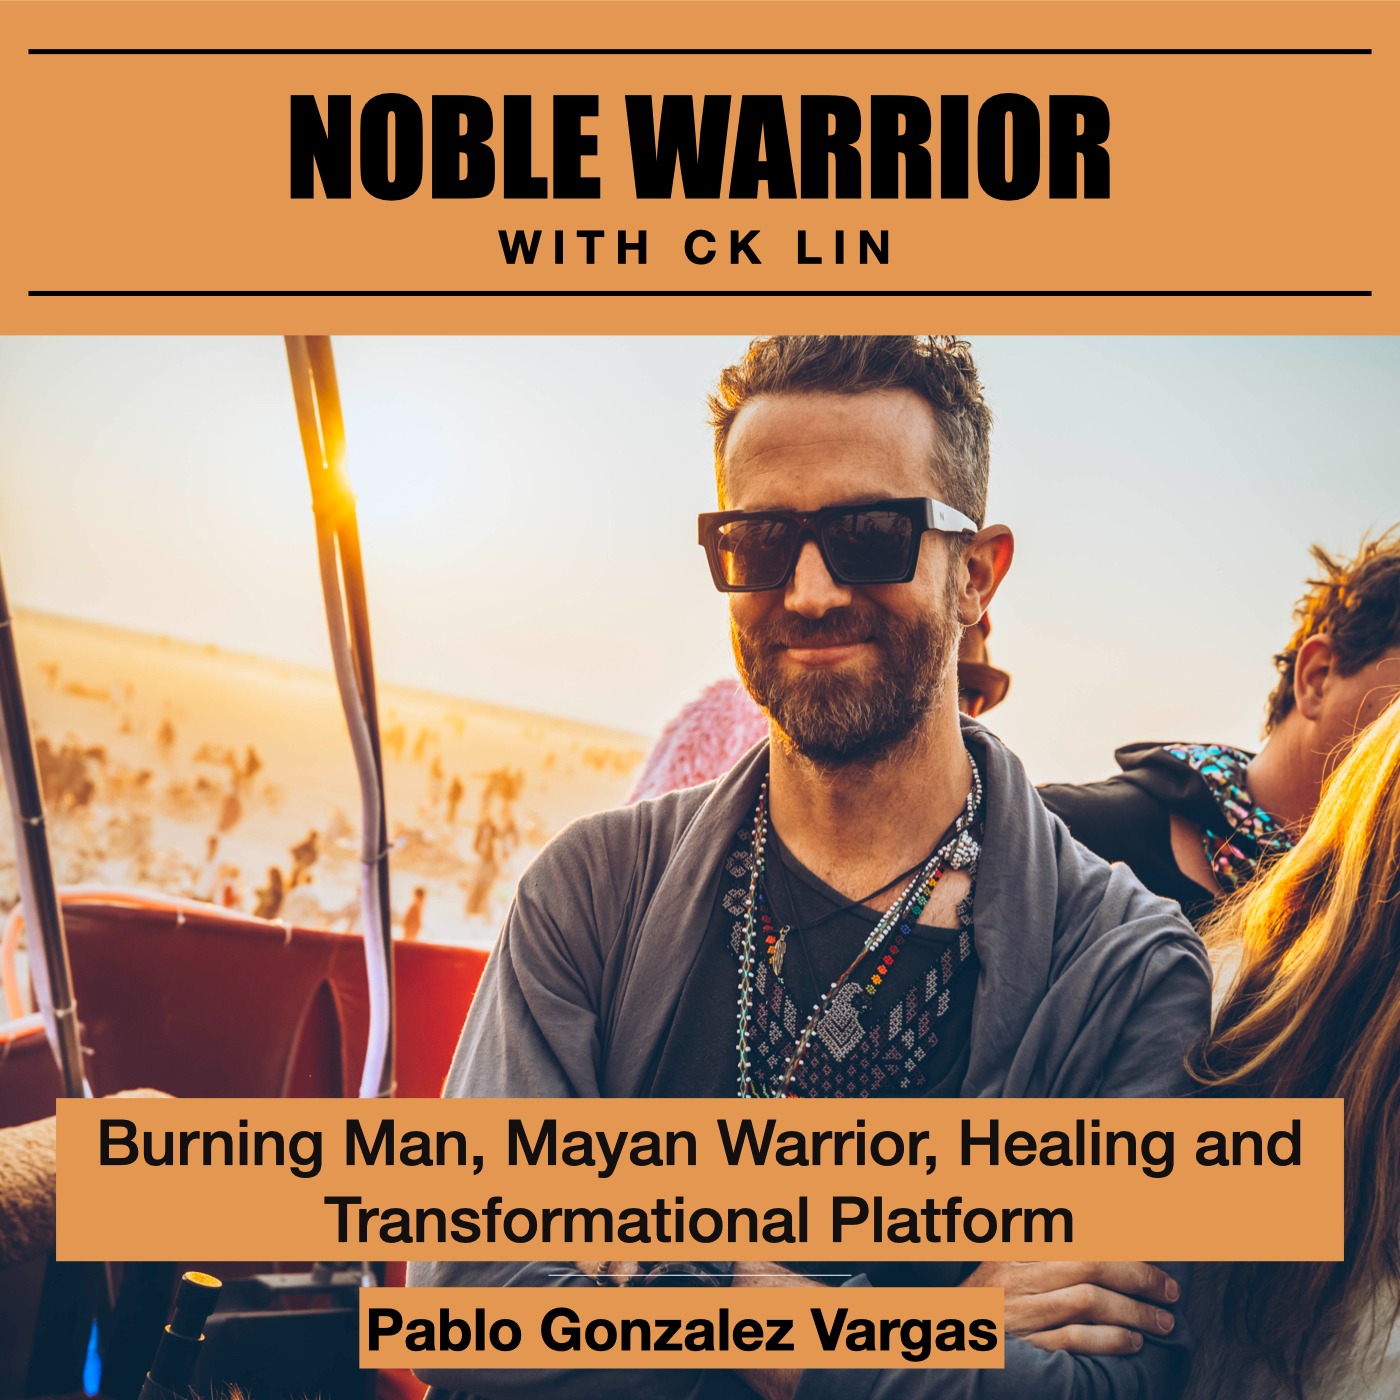 160 Pablo Gonzalez Vargas: Burning Man, Mayan Warrior, Healing and Transformational Platform Image